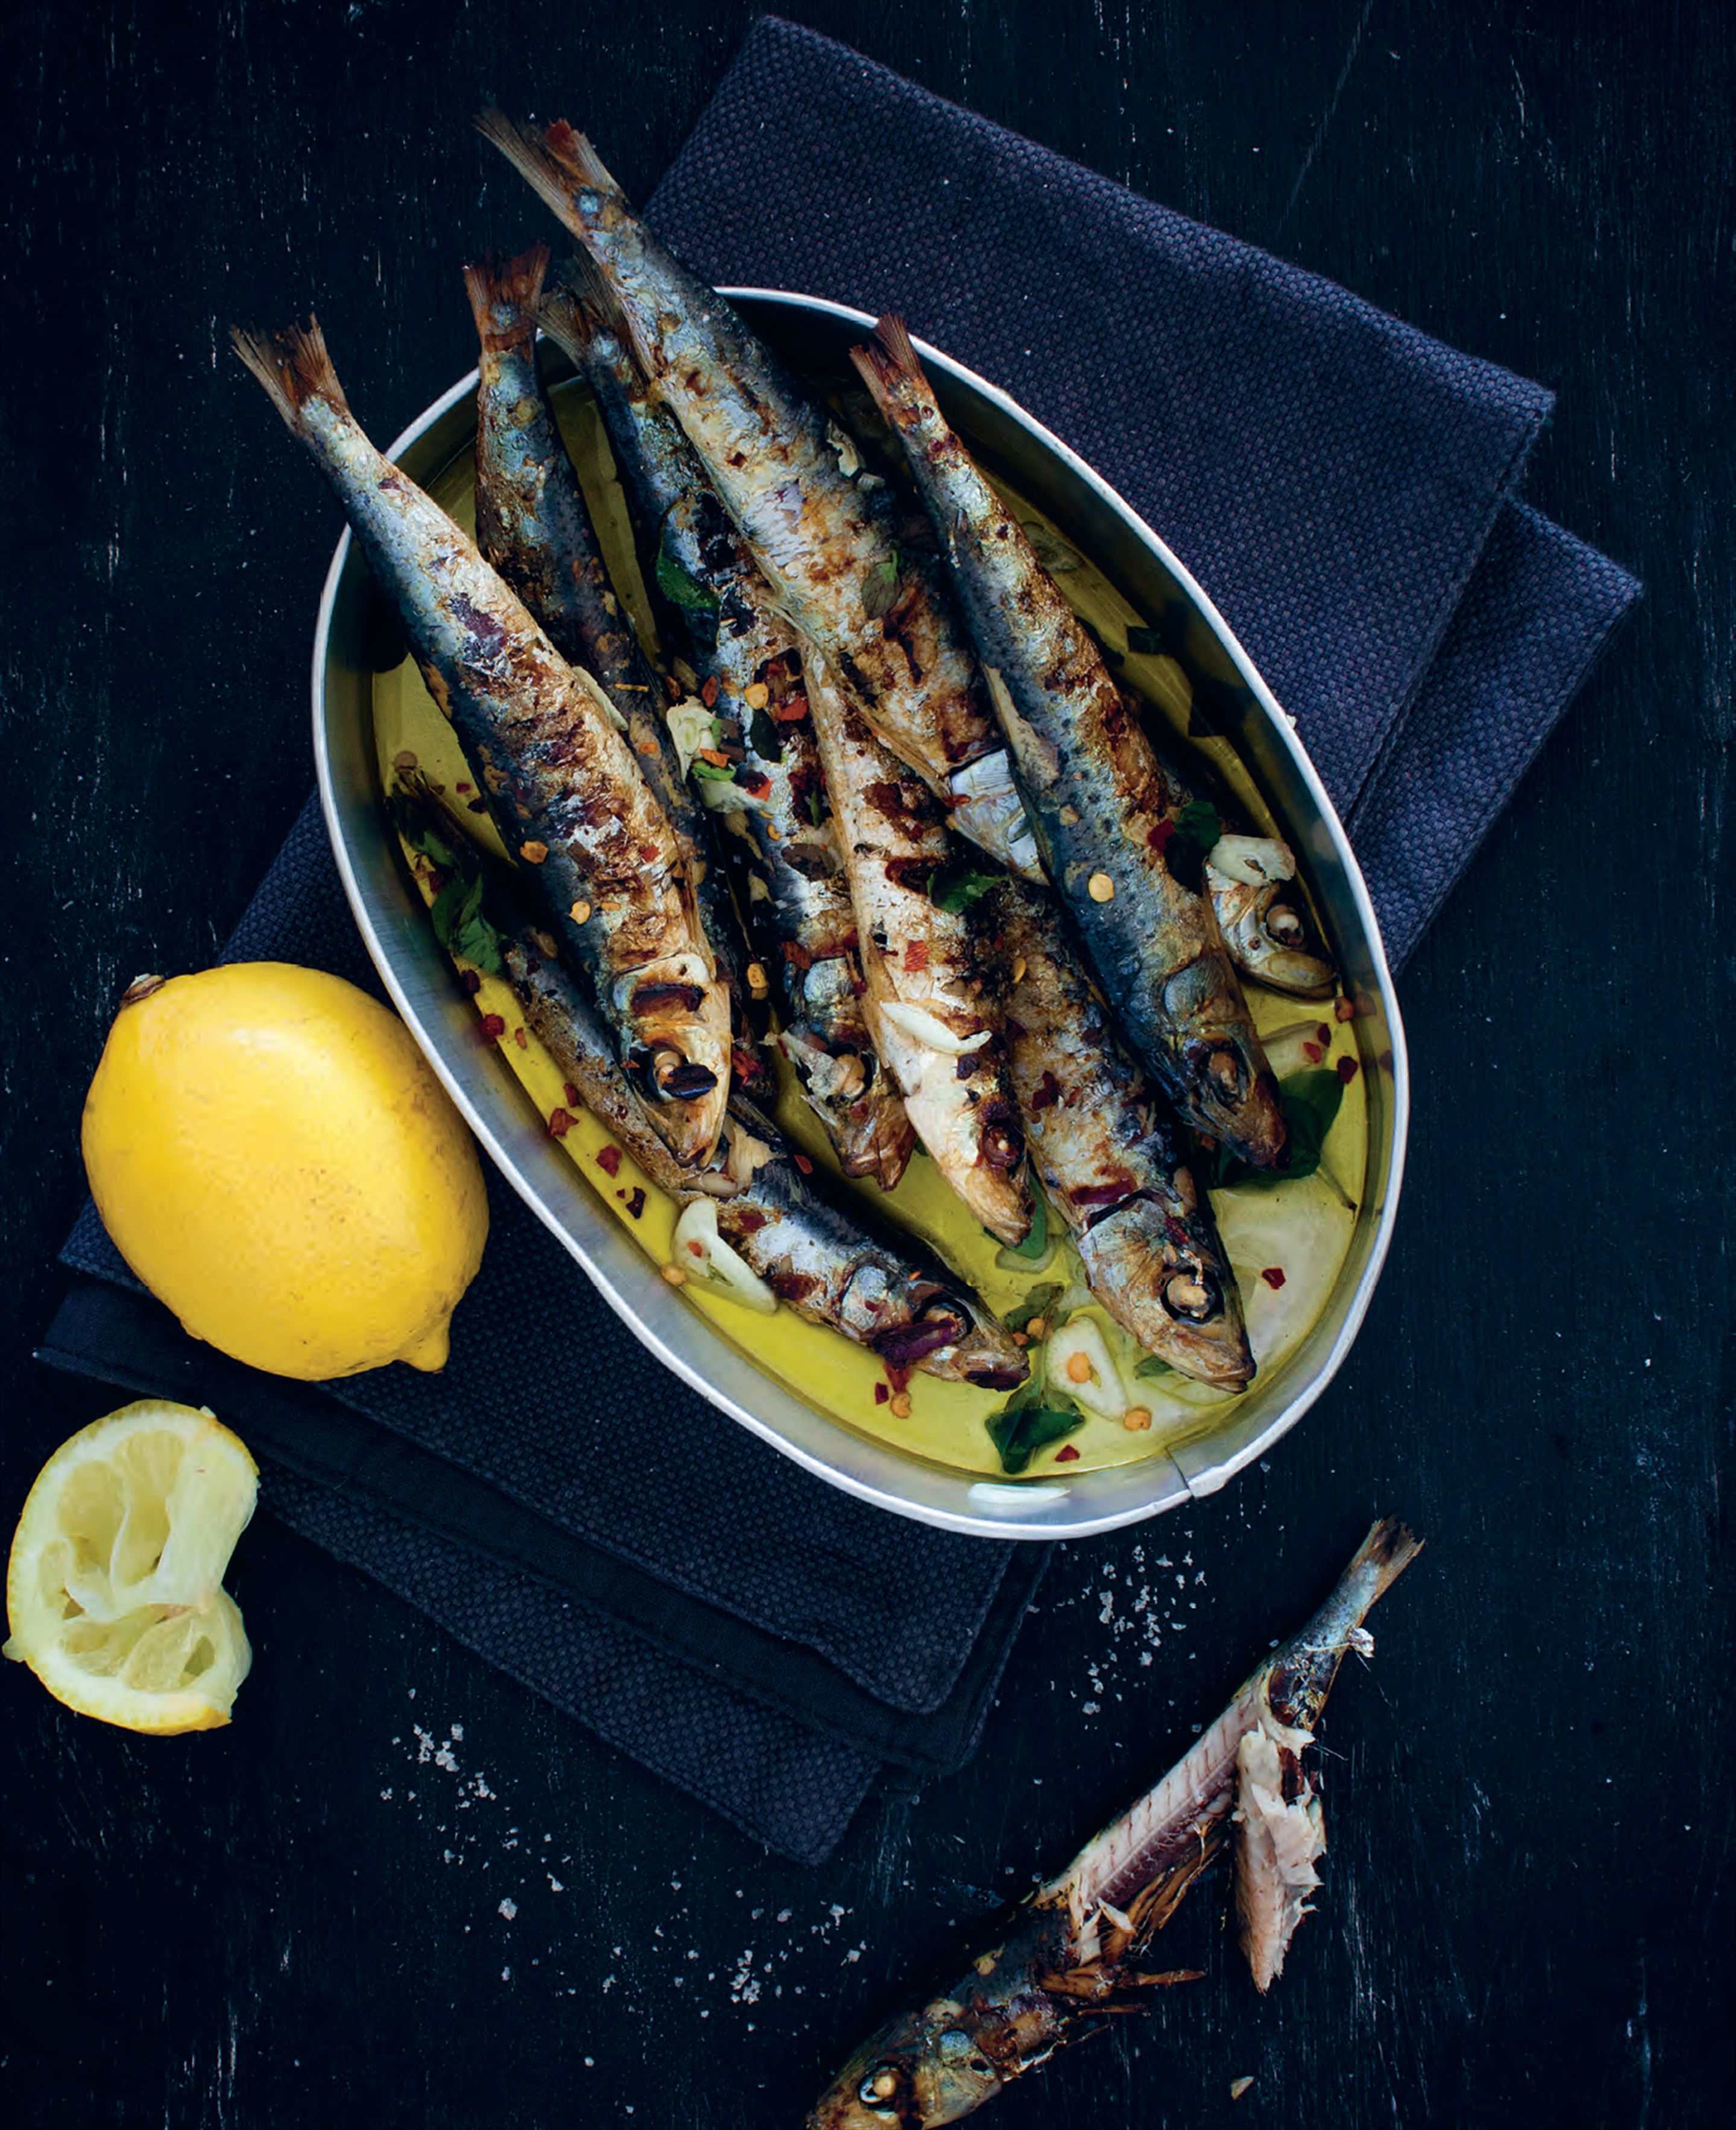 Sicilian sardines In oil